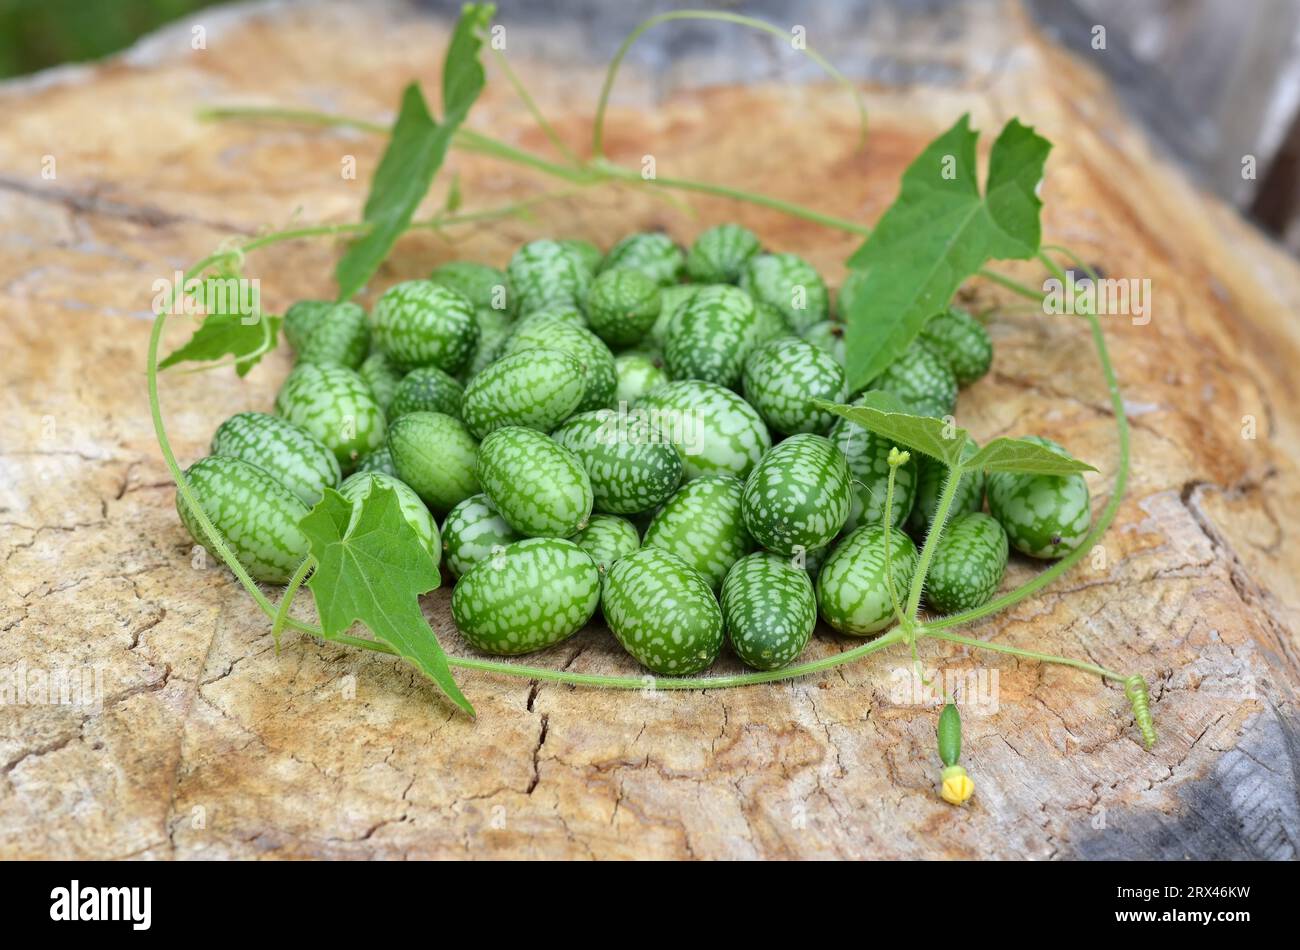 Grün gestreifte Melotria-Scabra-Früchte mit dünner Liane und grünen Blättern auf hölzernem Hintergrund. Bio-Gartenkonzept. Stockfoto